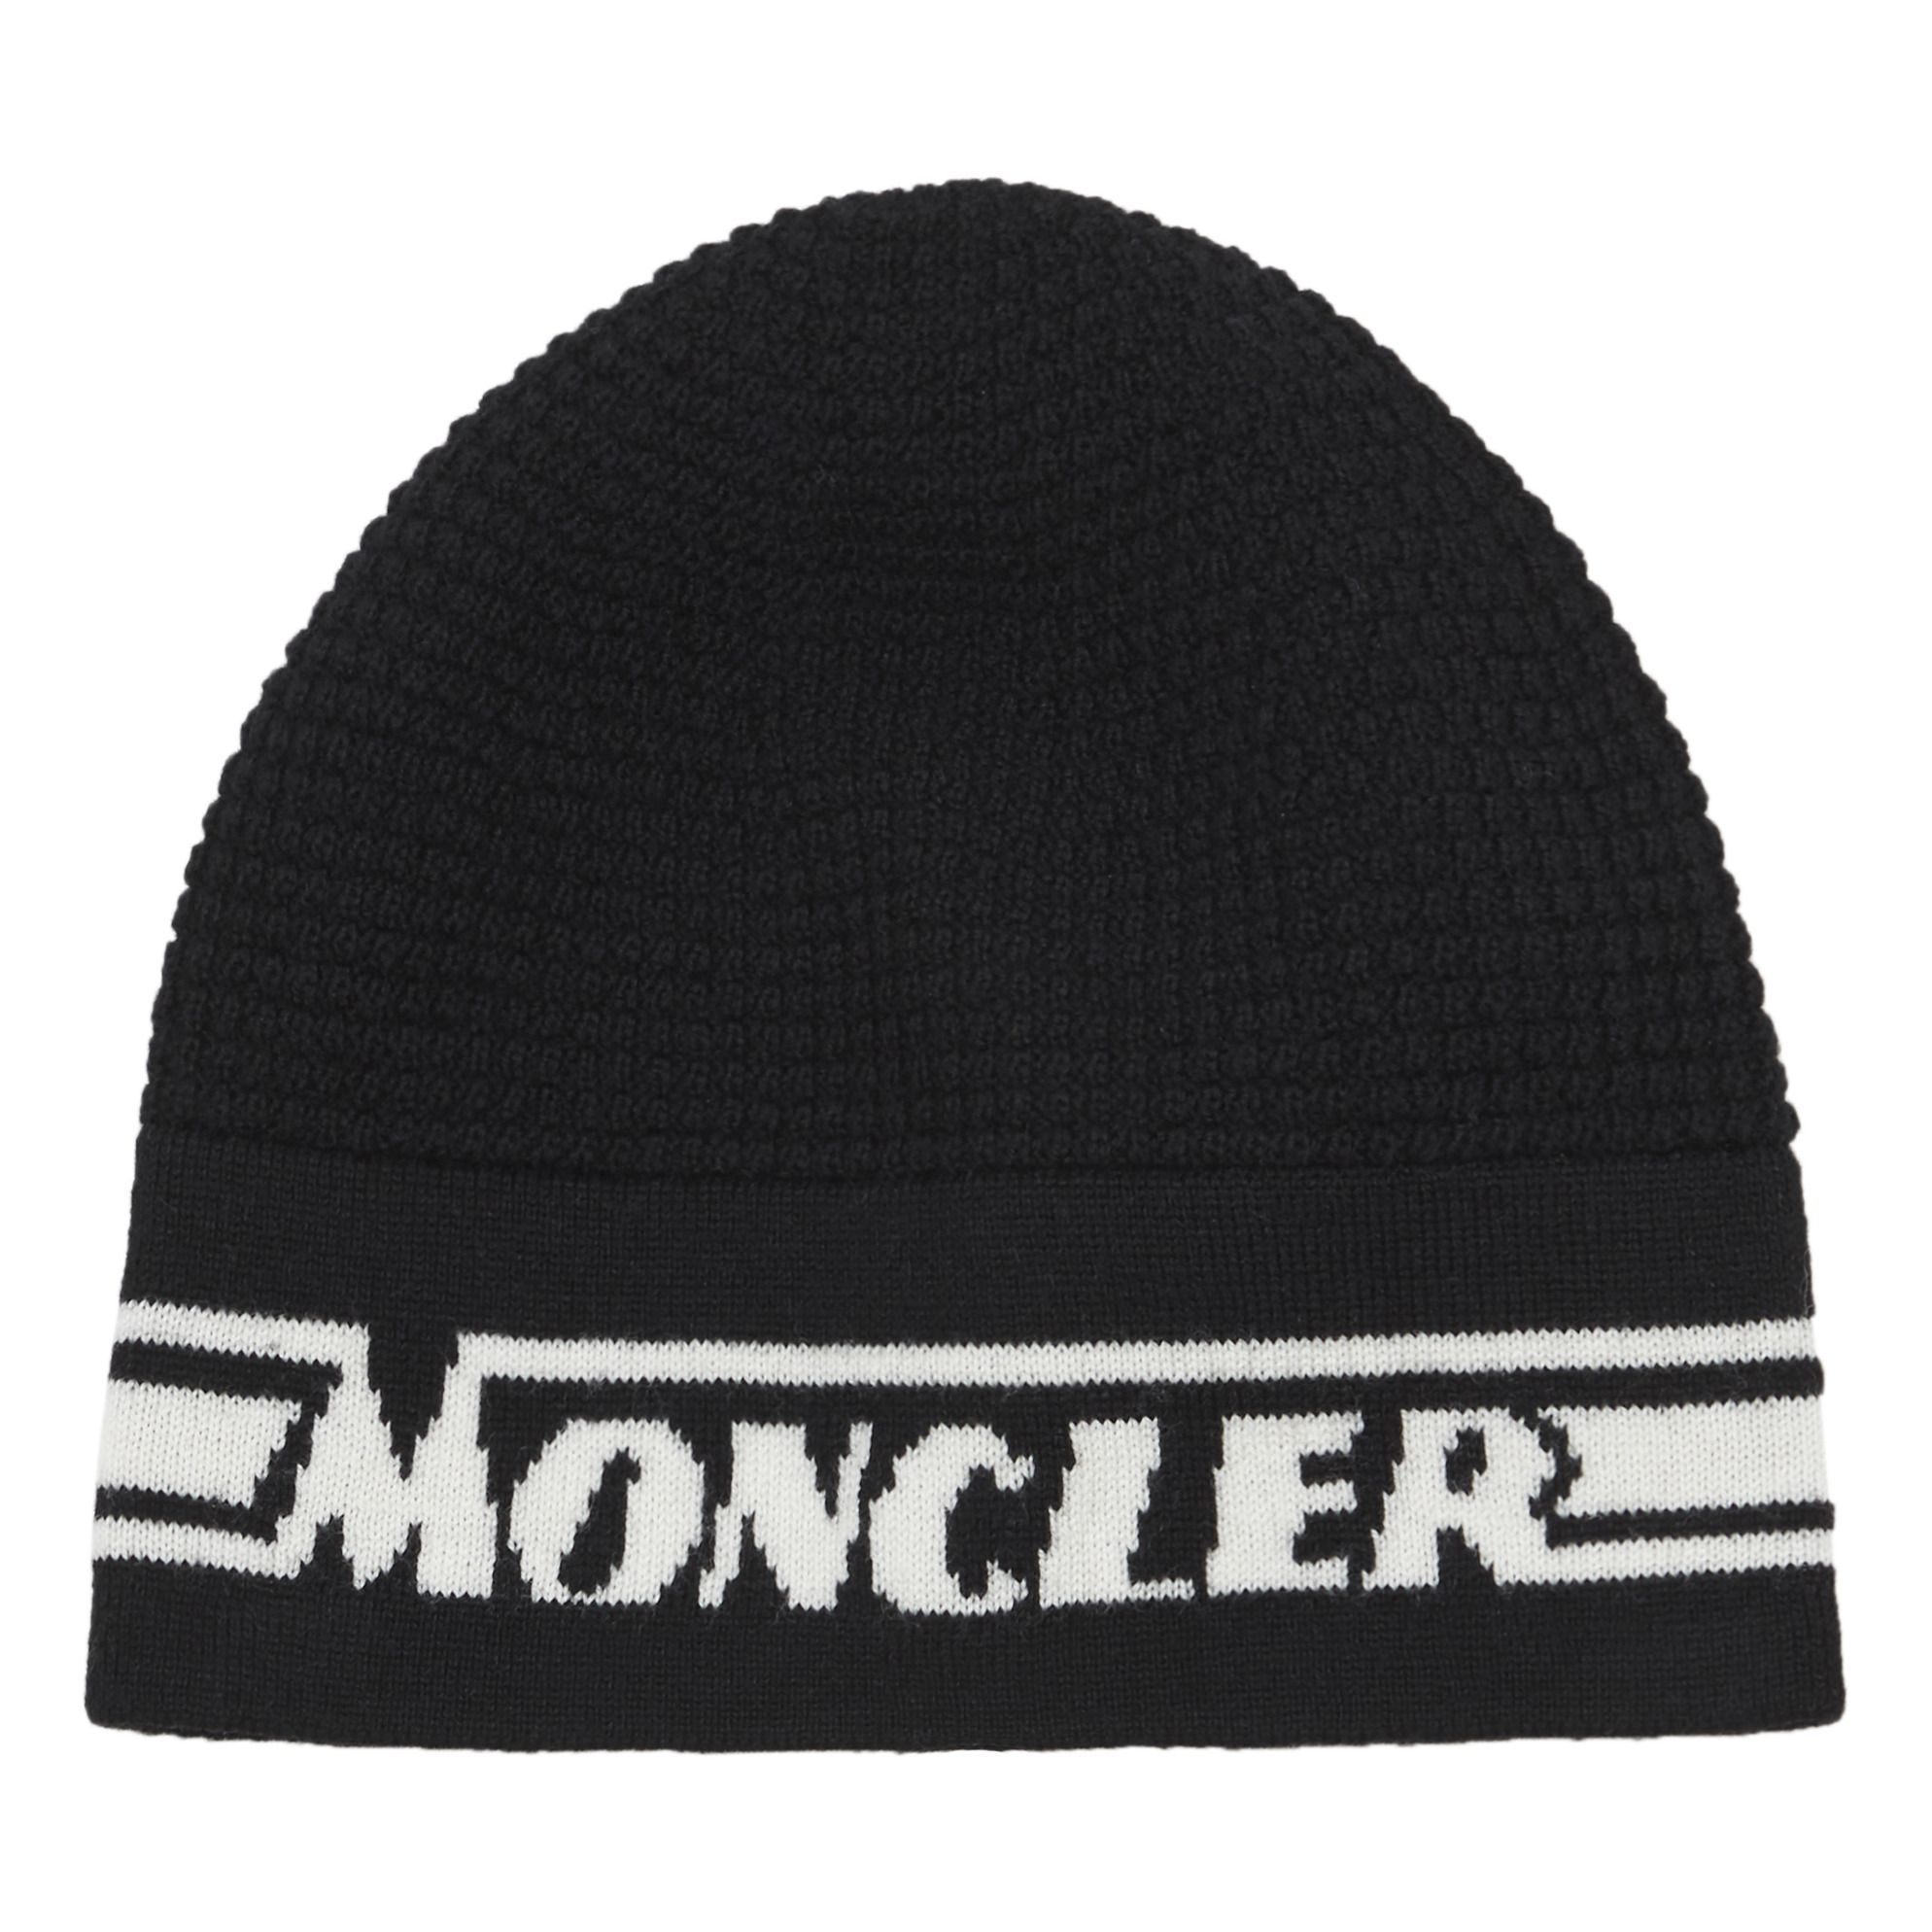 Moncler - Bonnet - Garçon - Noir